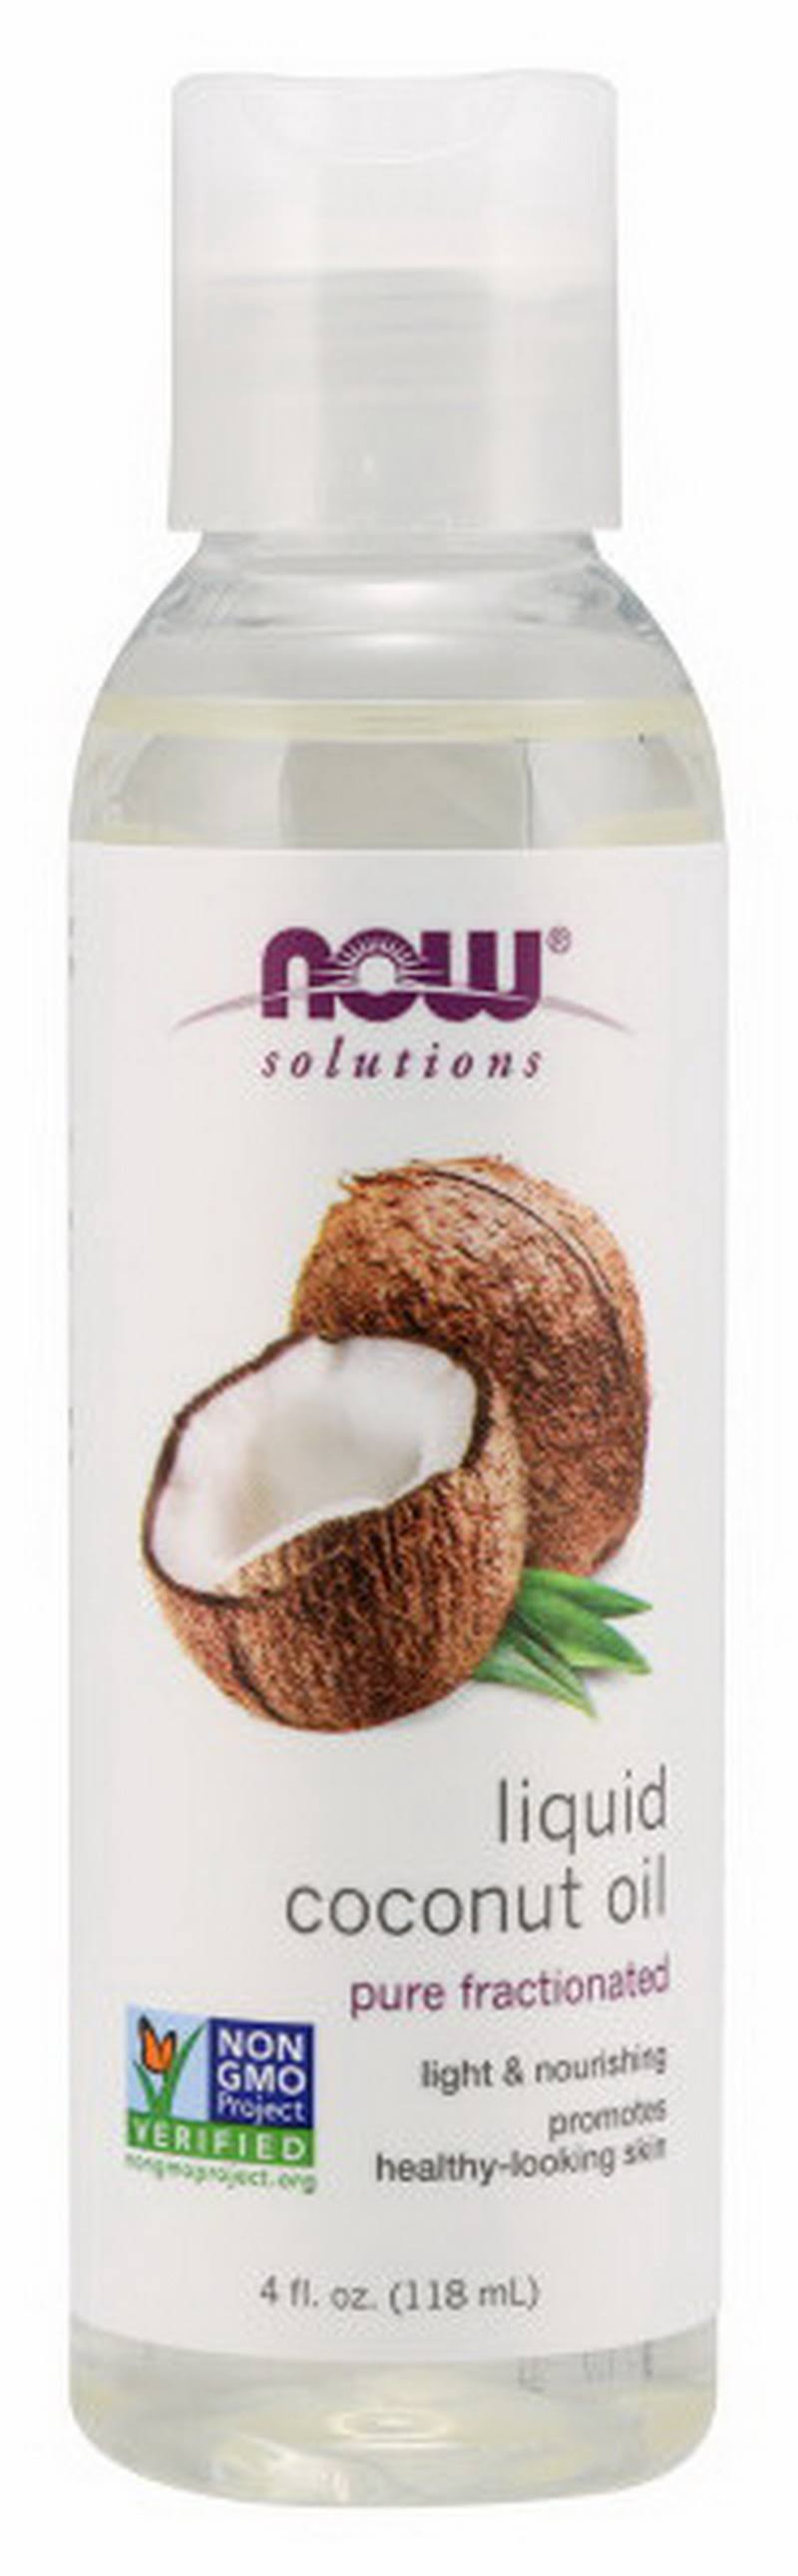 NOW Foods, Liquid Coconut Oil, 4 fl oz